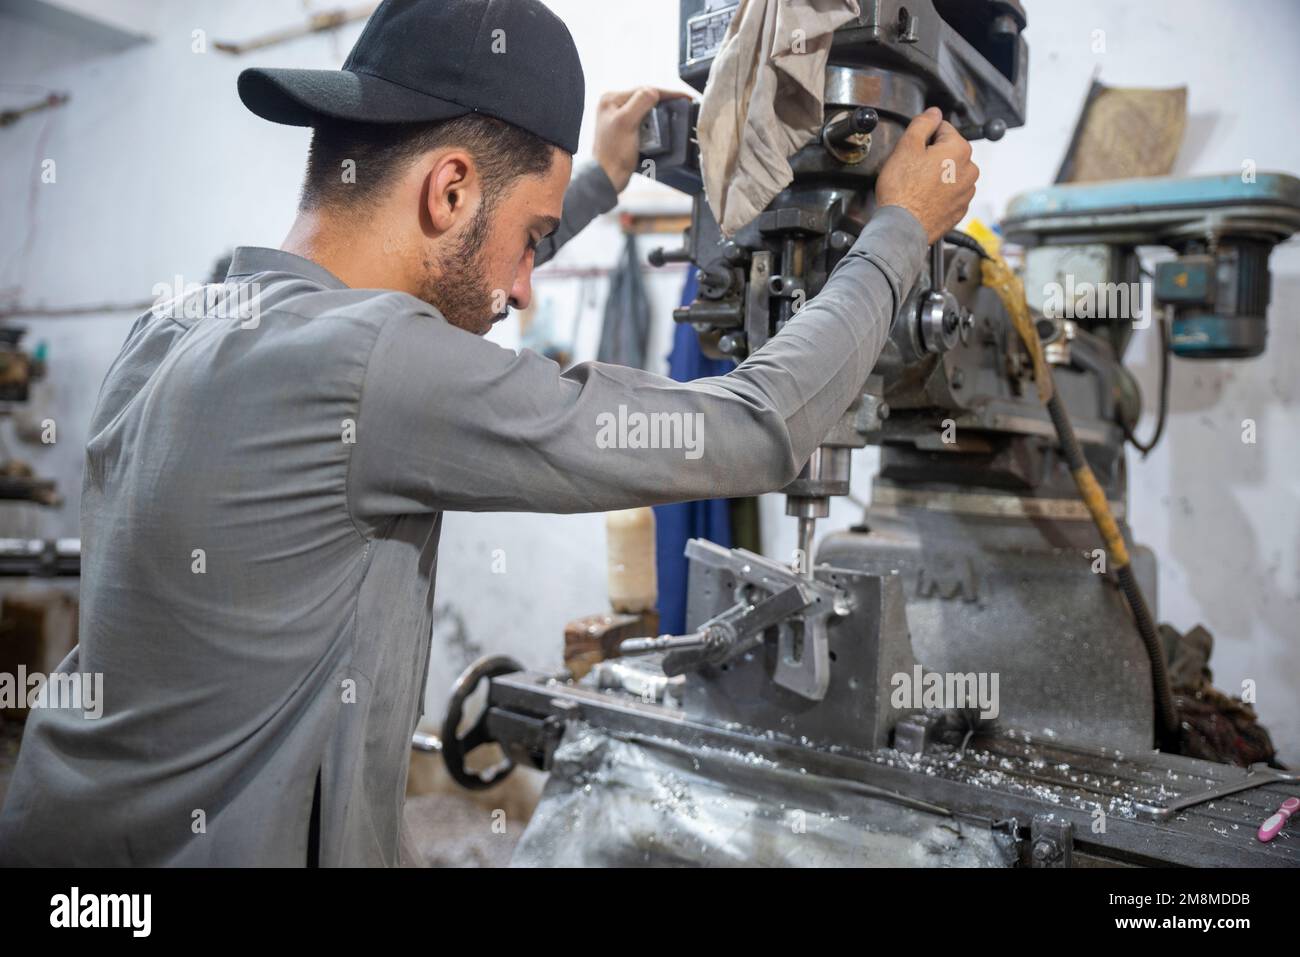 Armurier travaillant sur un revolver dans une usine d'armes, Peshawar, Pakistan Banque D'Images